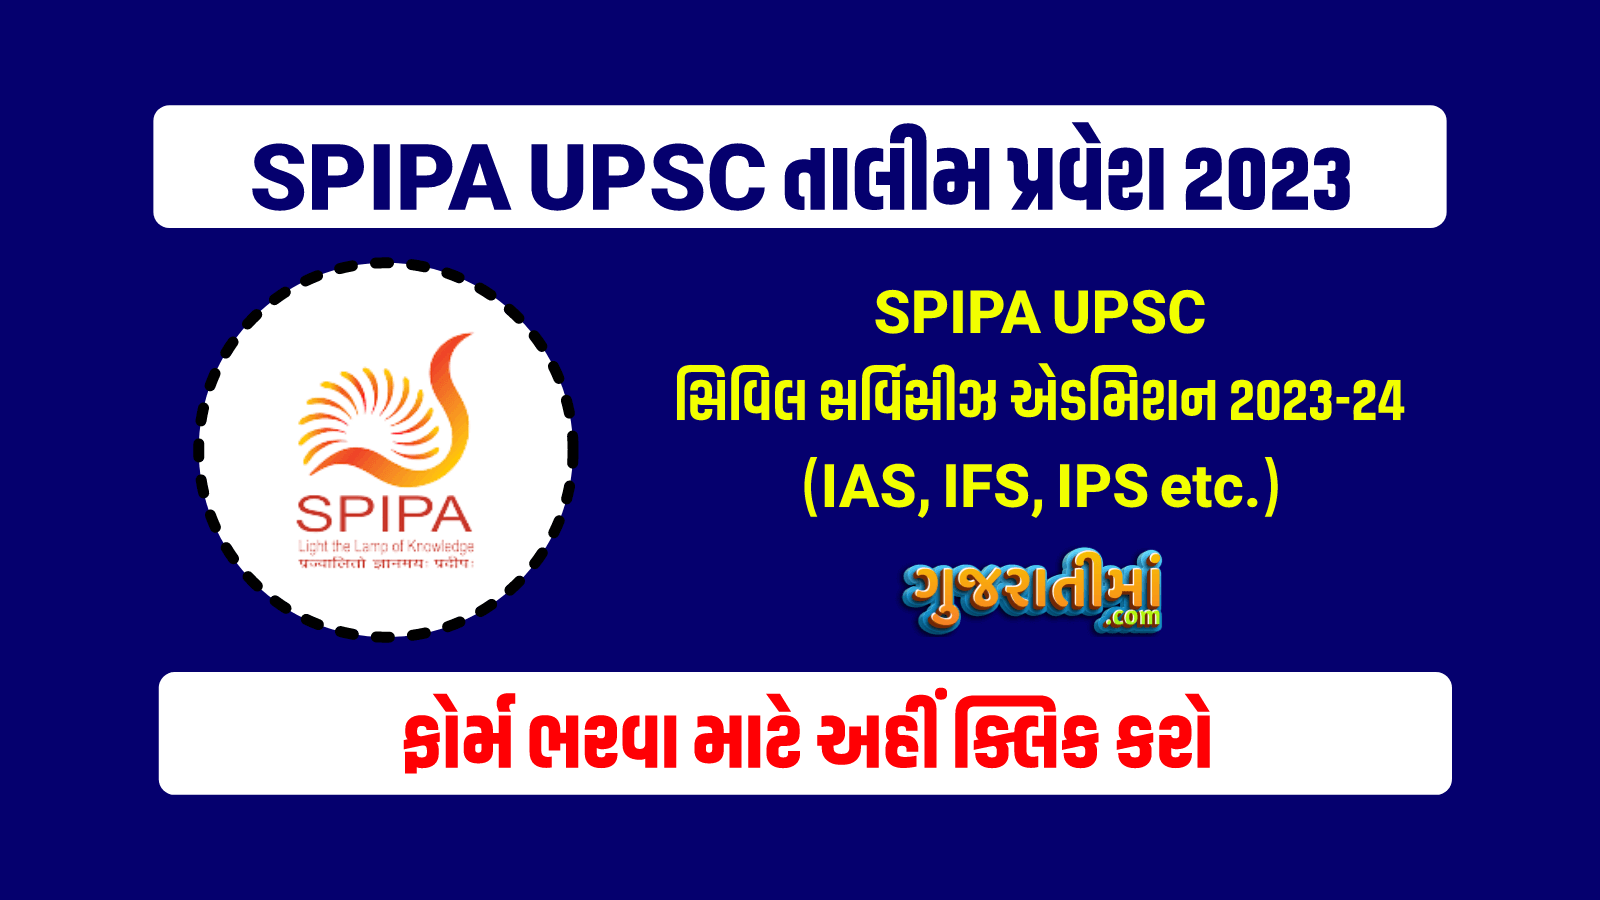 SPIPA UPSC exam